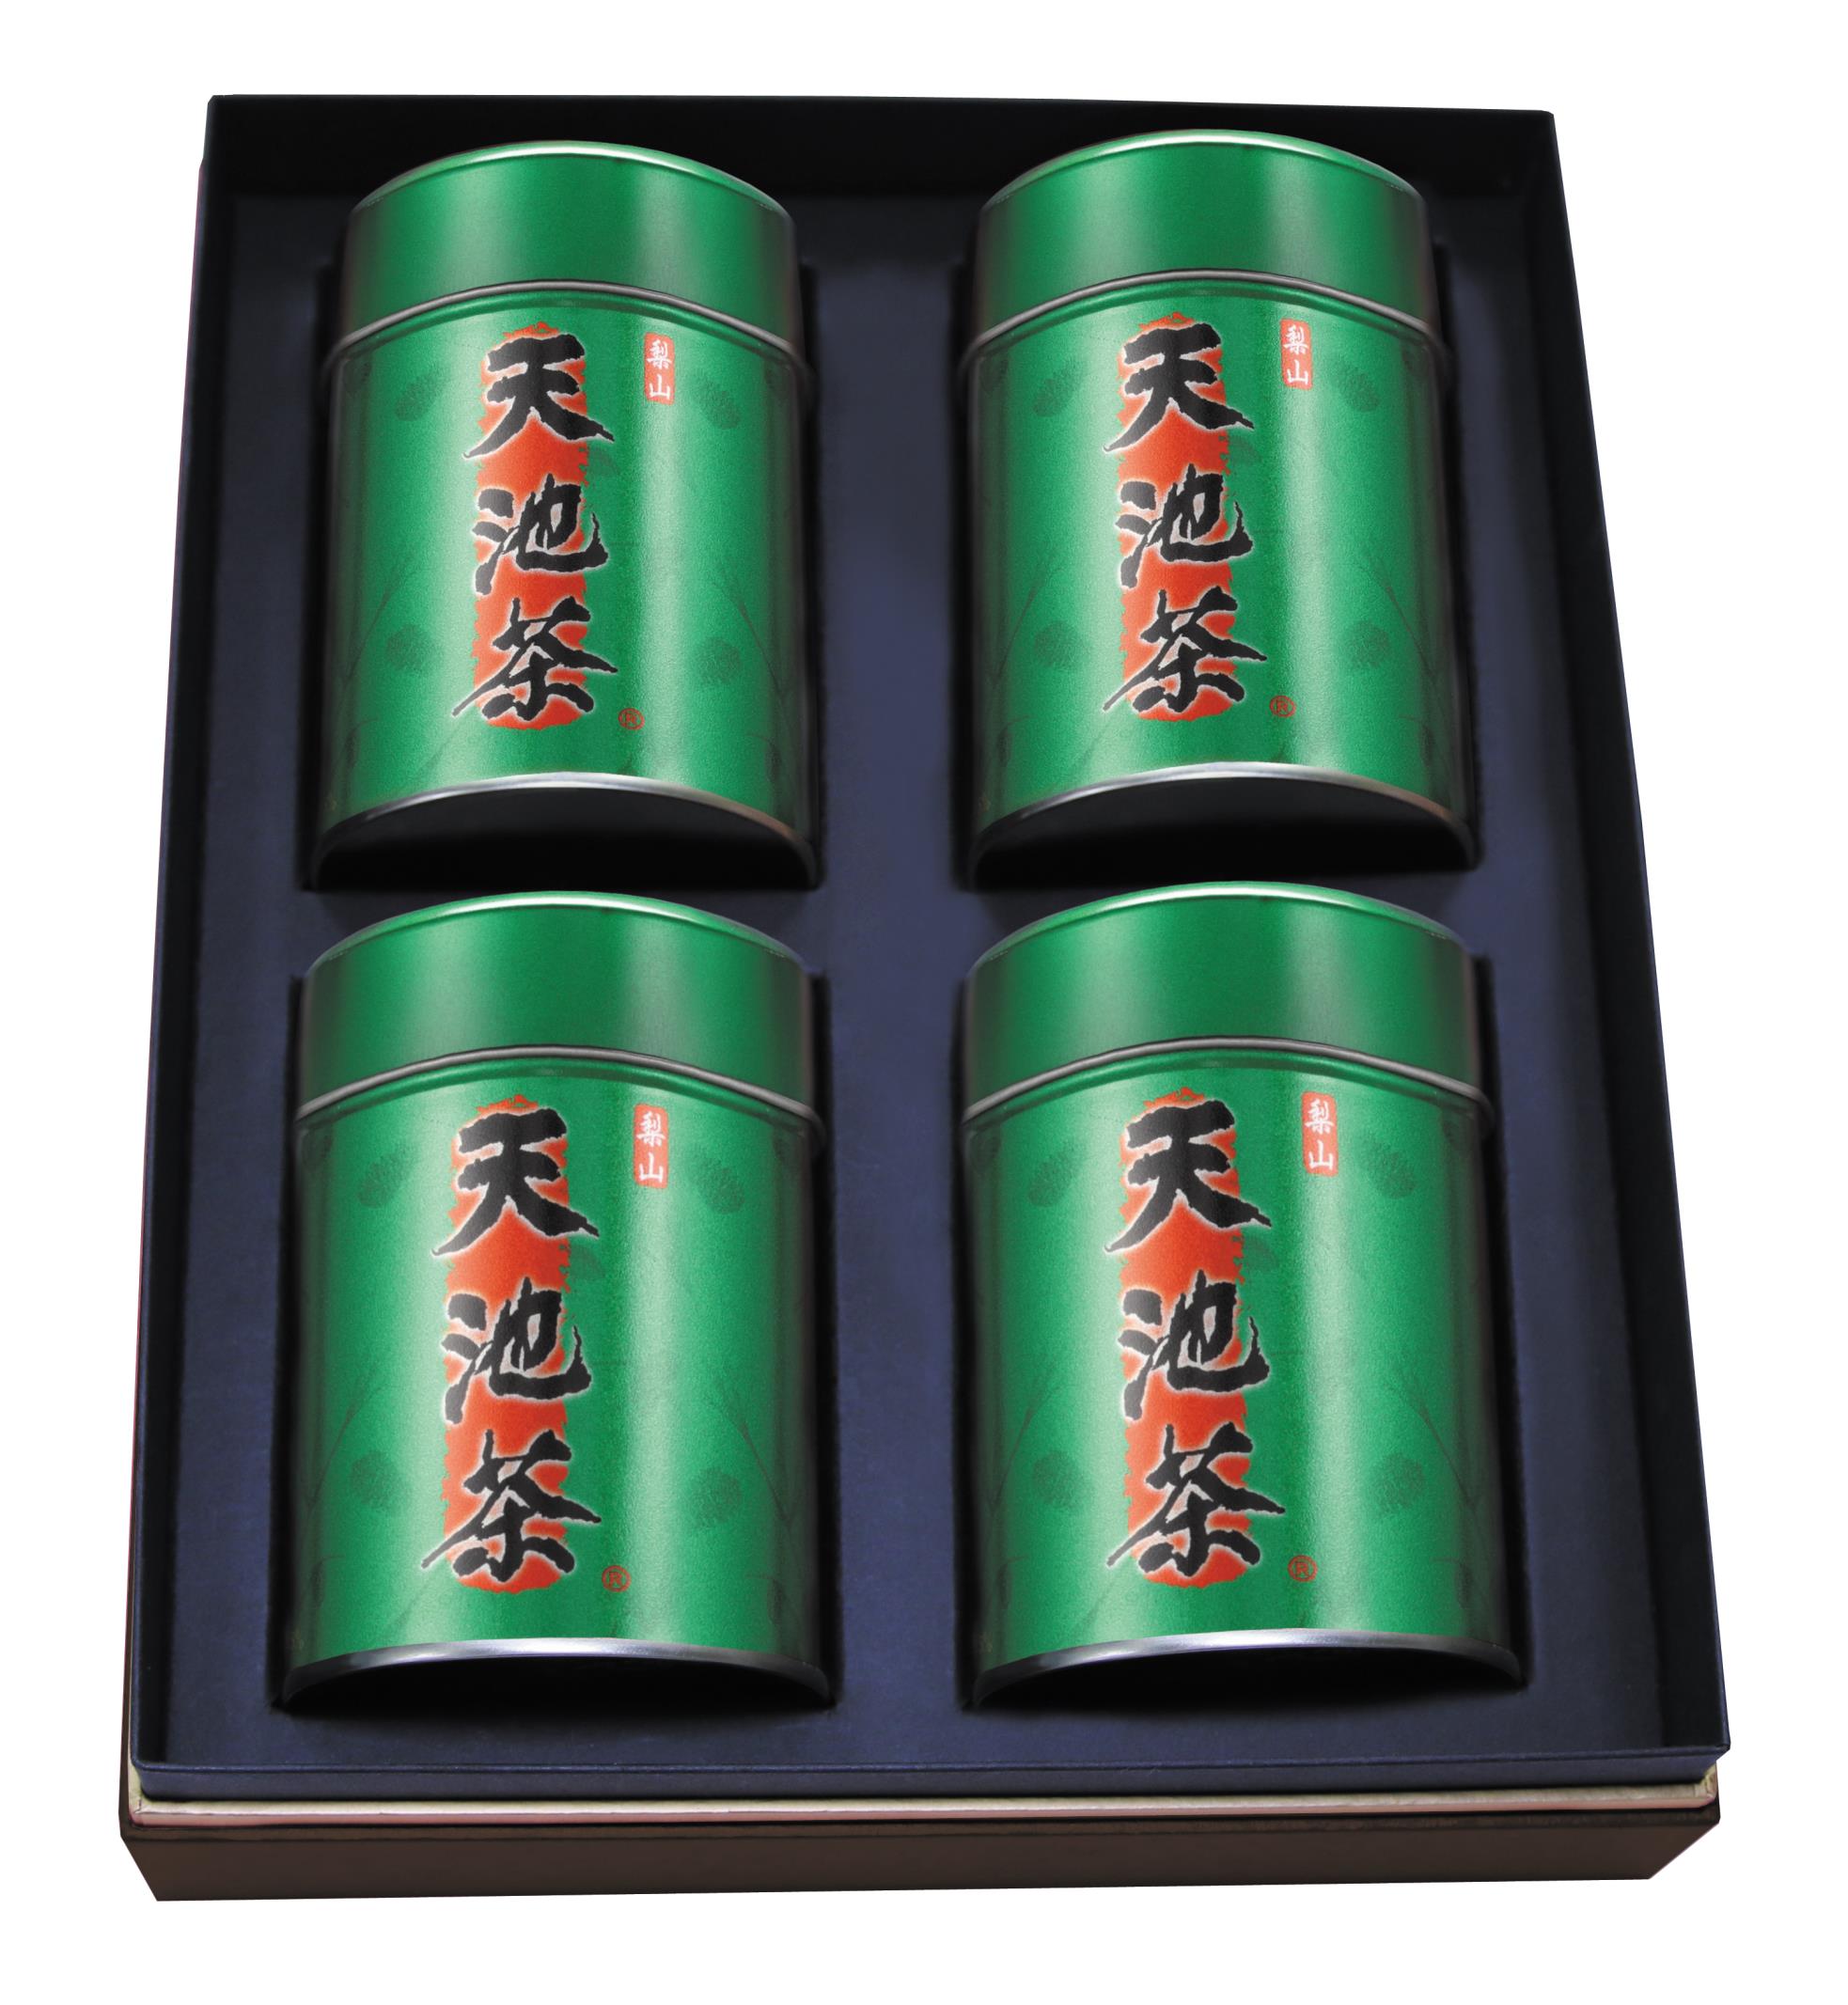 ◇ 梨山茶(4罐300g) - 一頂天/ 仁愛農產股份有限公司